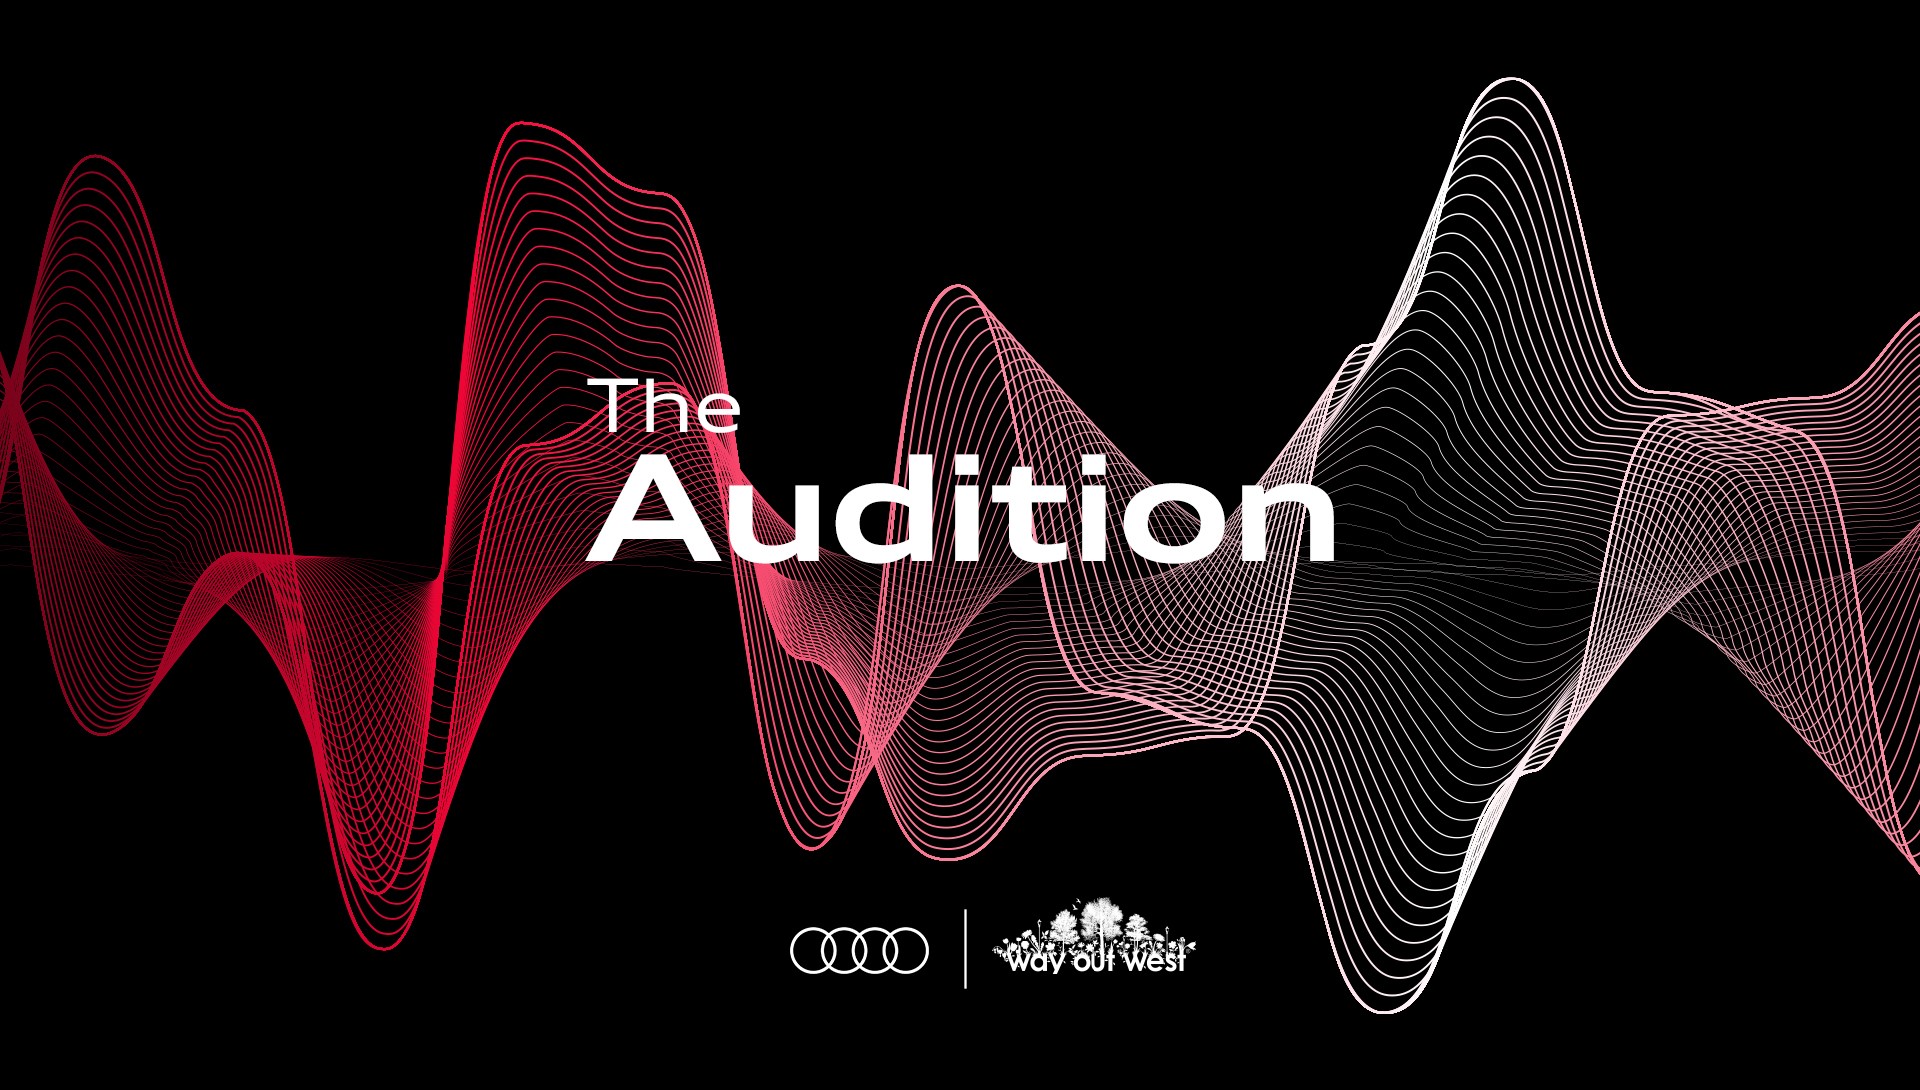 Audi letar efter nästa stjärna tillsammans med Way out West.